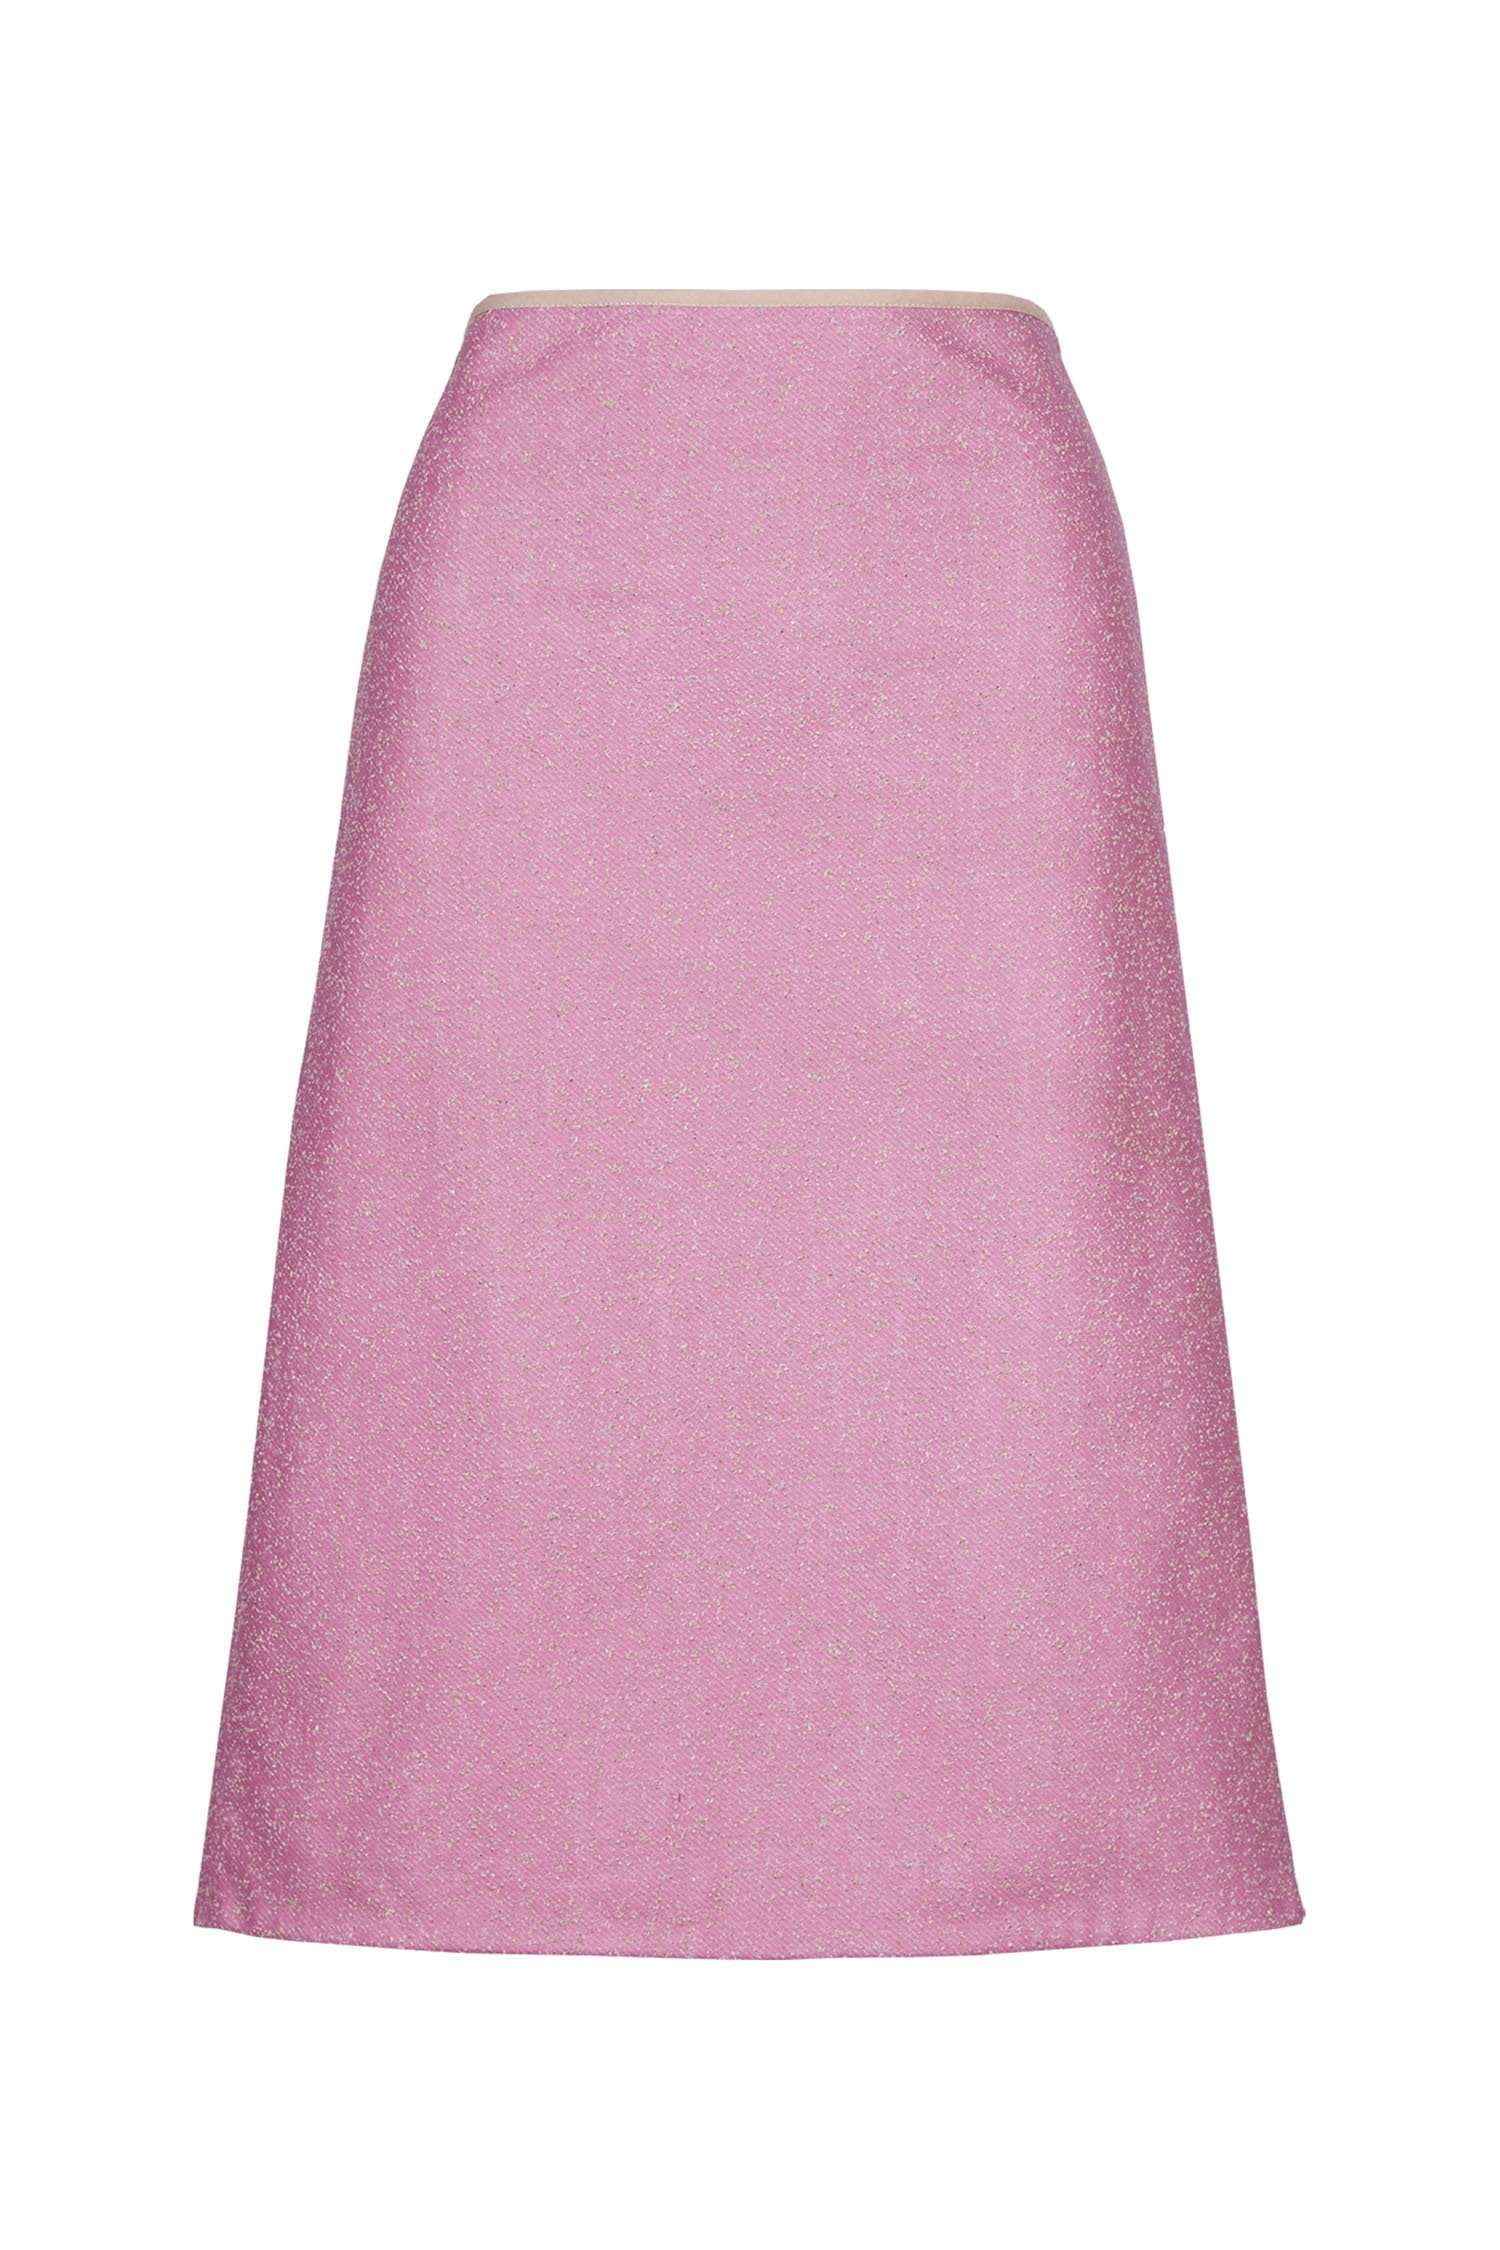 Acephala Ss2019 Pink Skirt Packshot